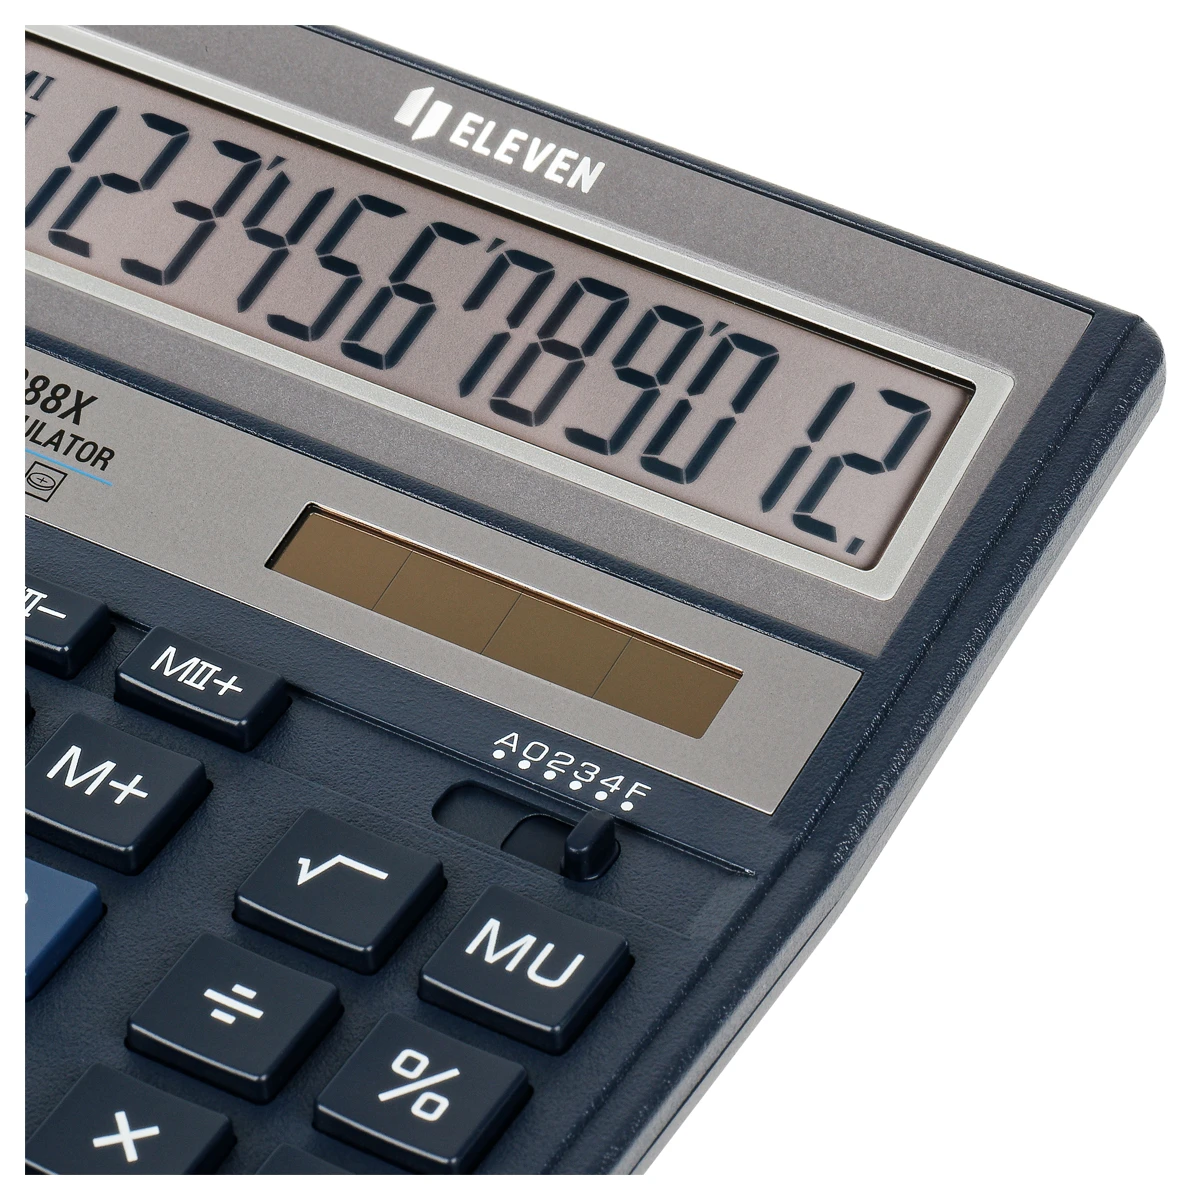 Калькулятор настольный Eleven SDC-888X-BL, 12 разрядов, двойное питание,